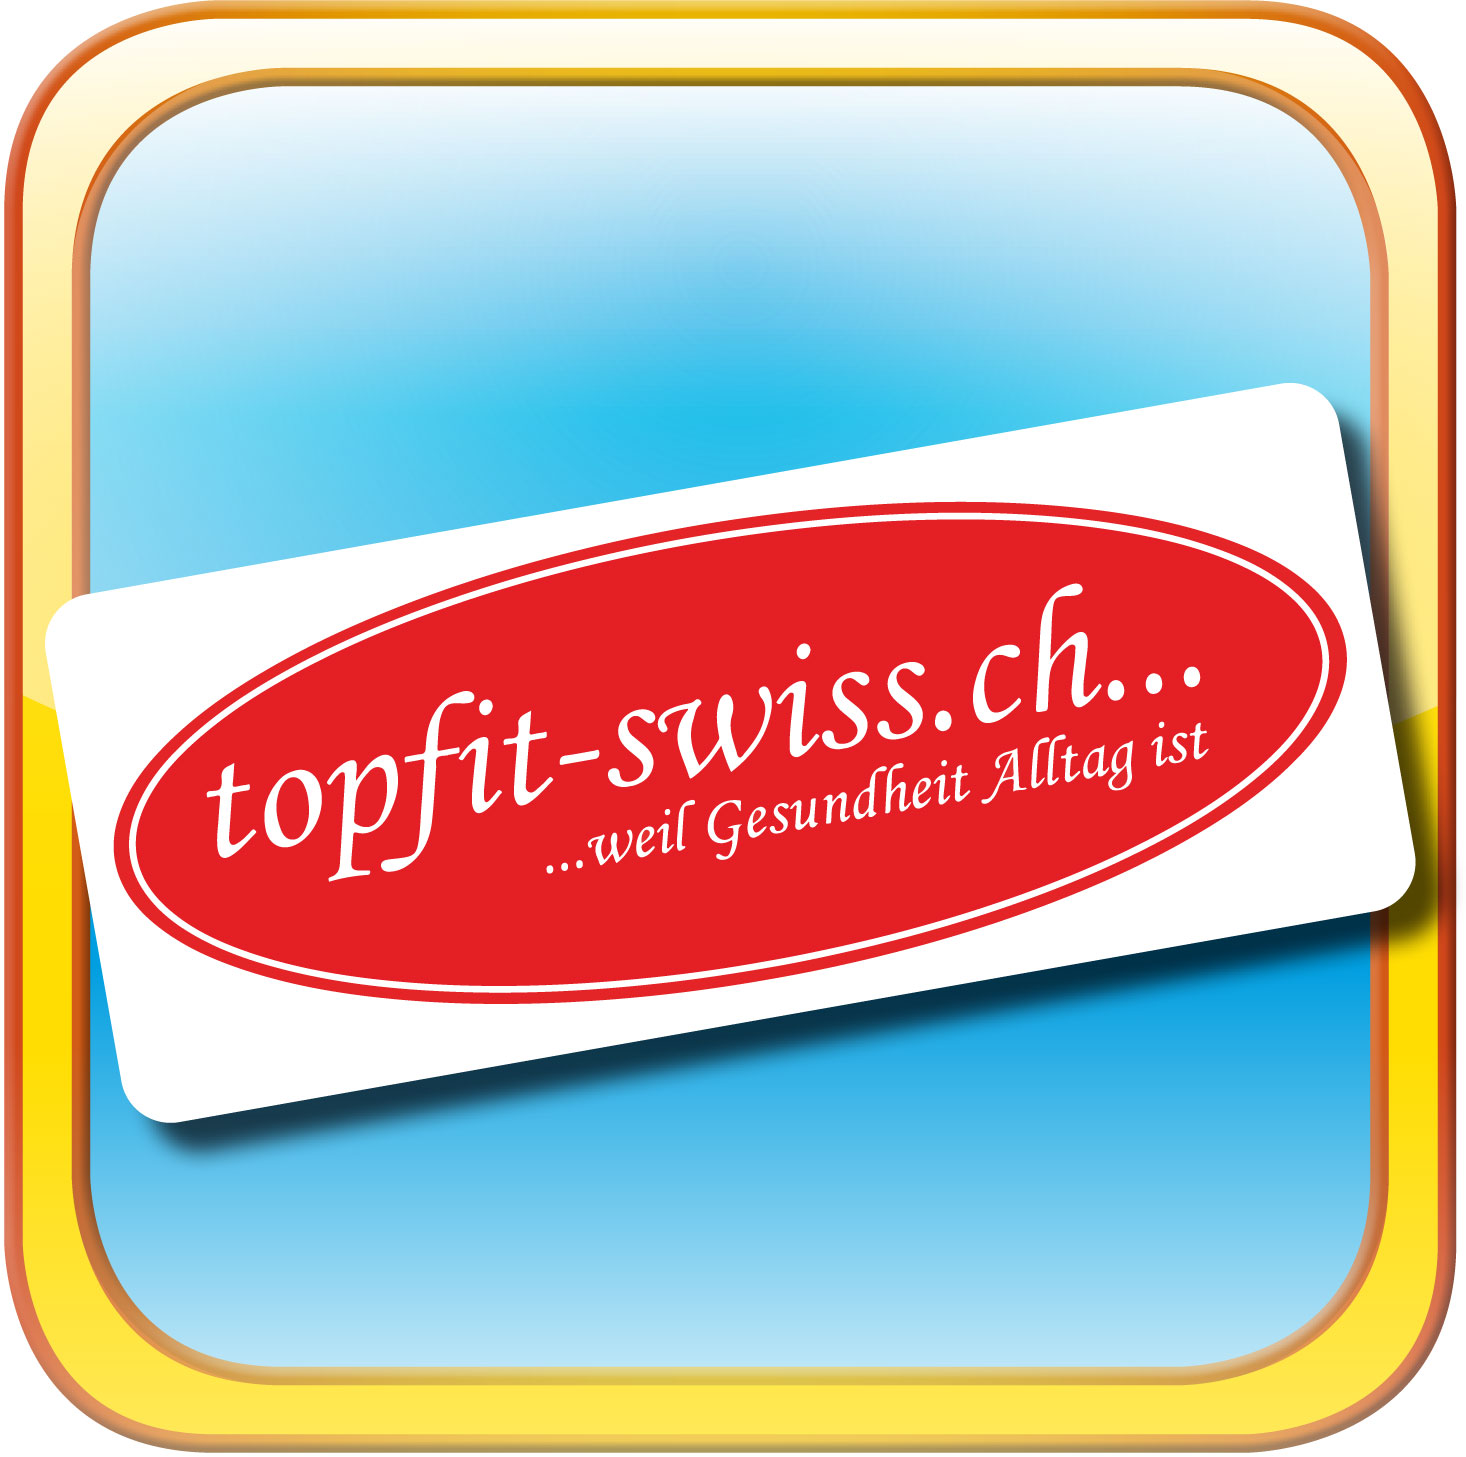 Topfit Fitness unterstützt das Beltane Parkvolleyball-Turnier in Cham Zug | Topfit Fitness und das Beltane Volleyball-Turnier